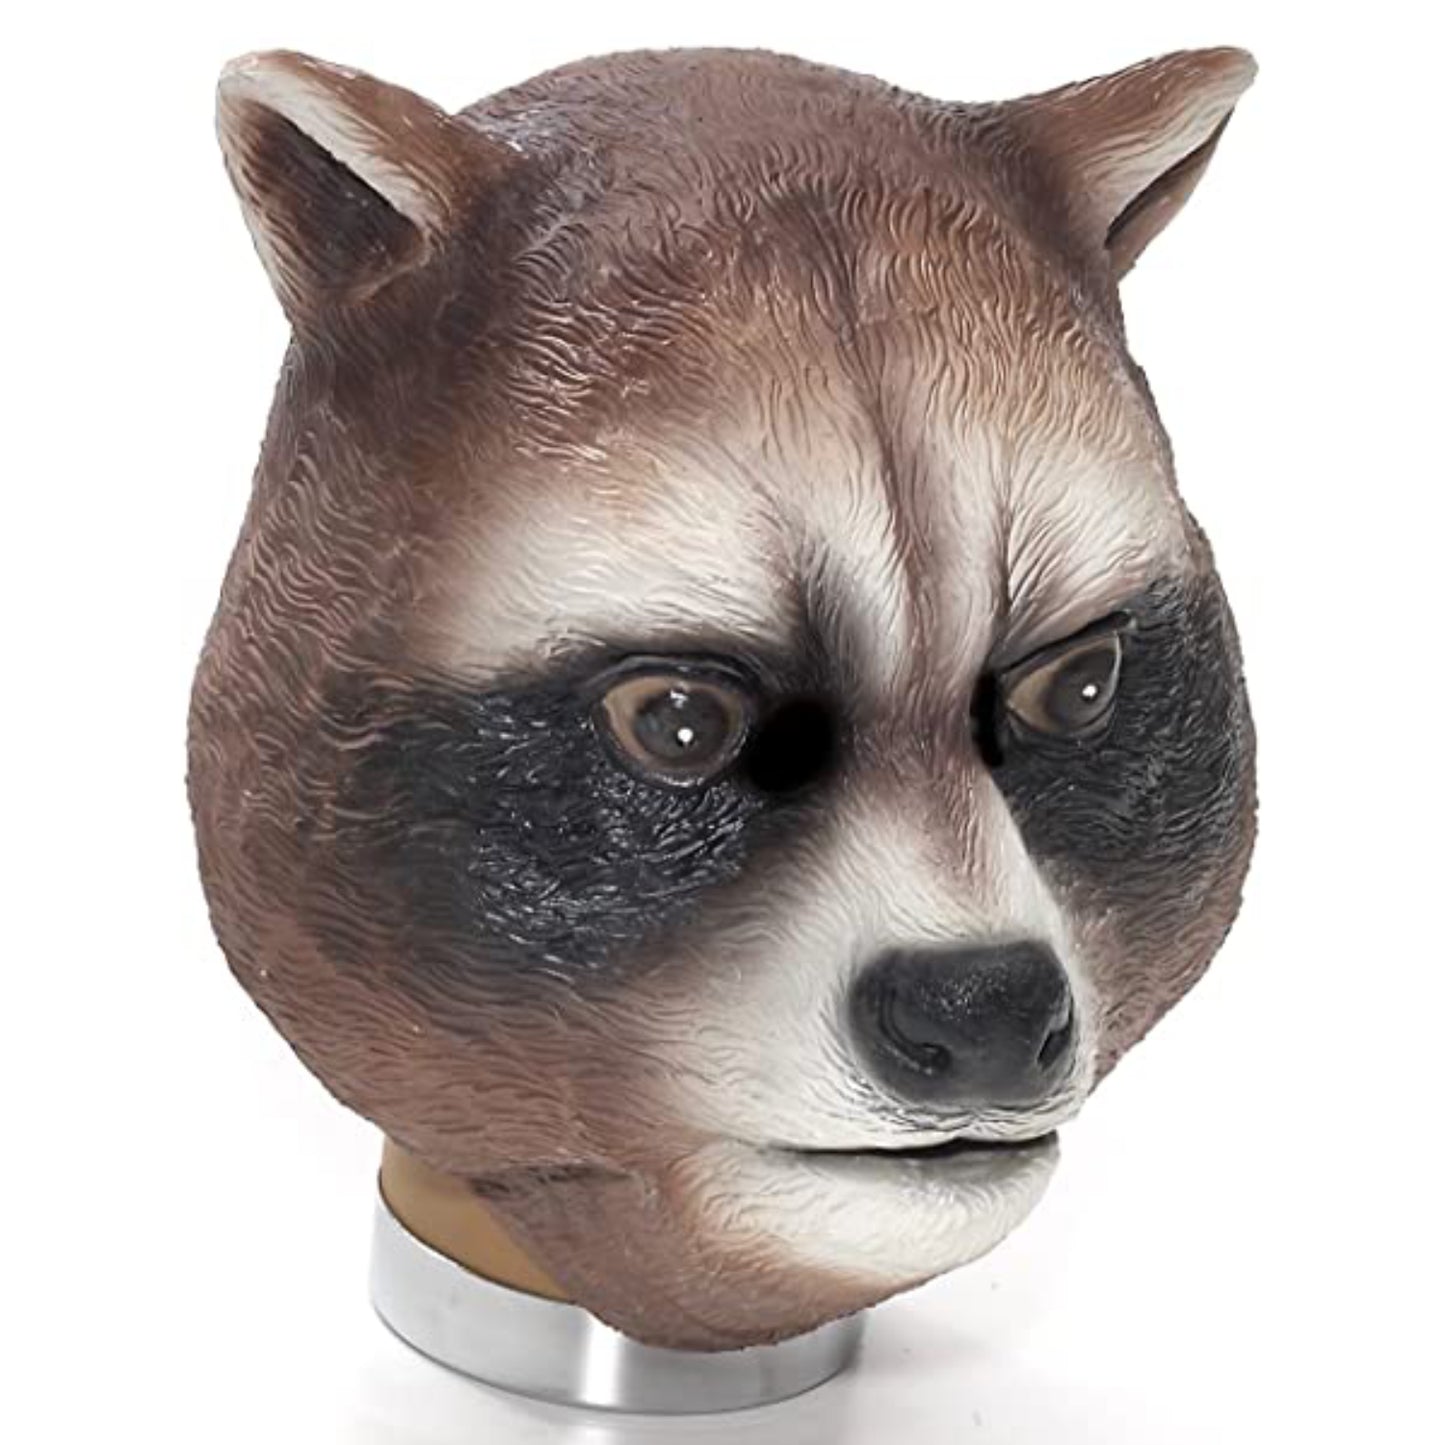 Raccoon Mask